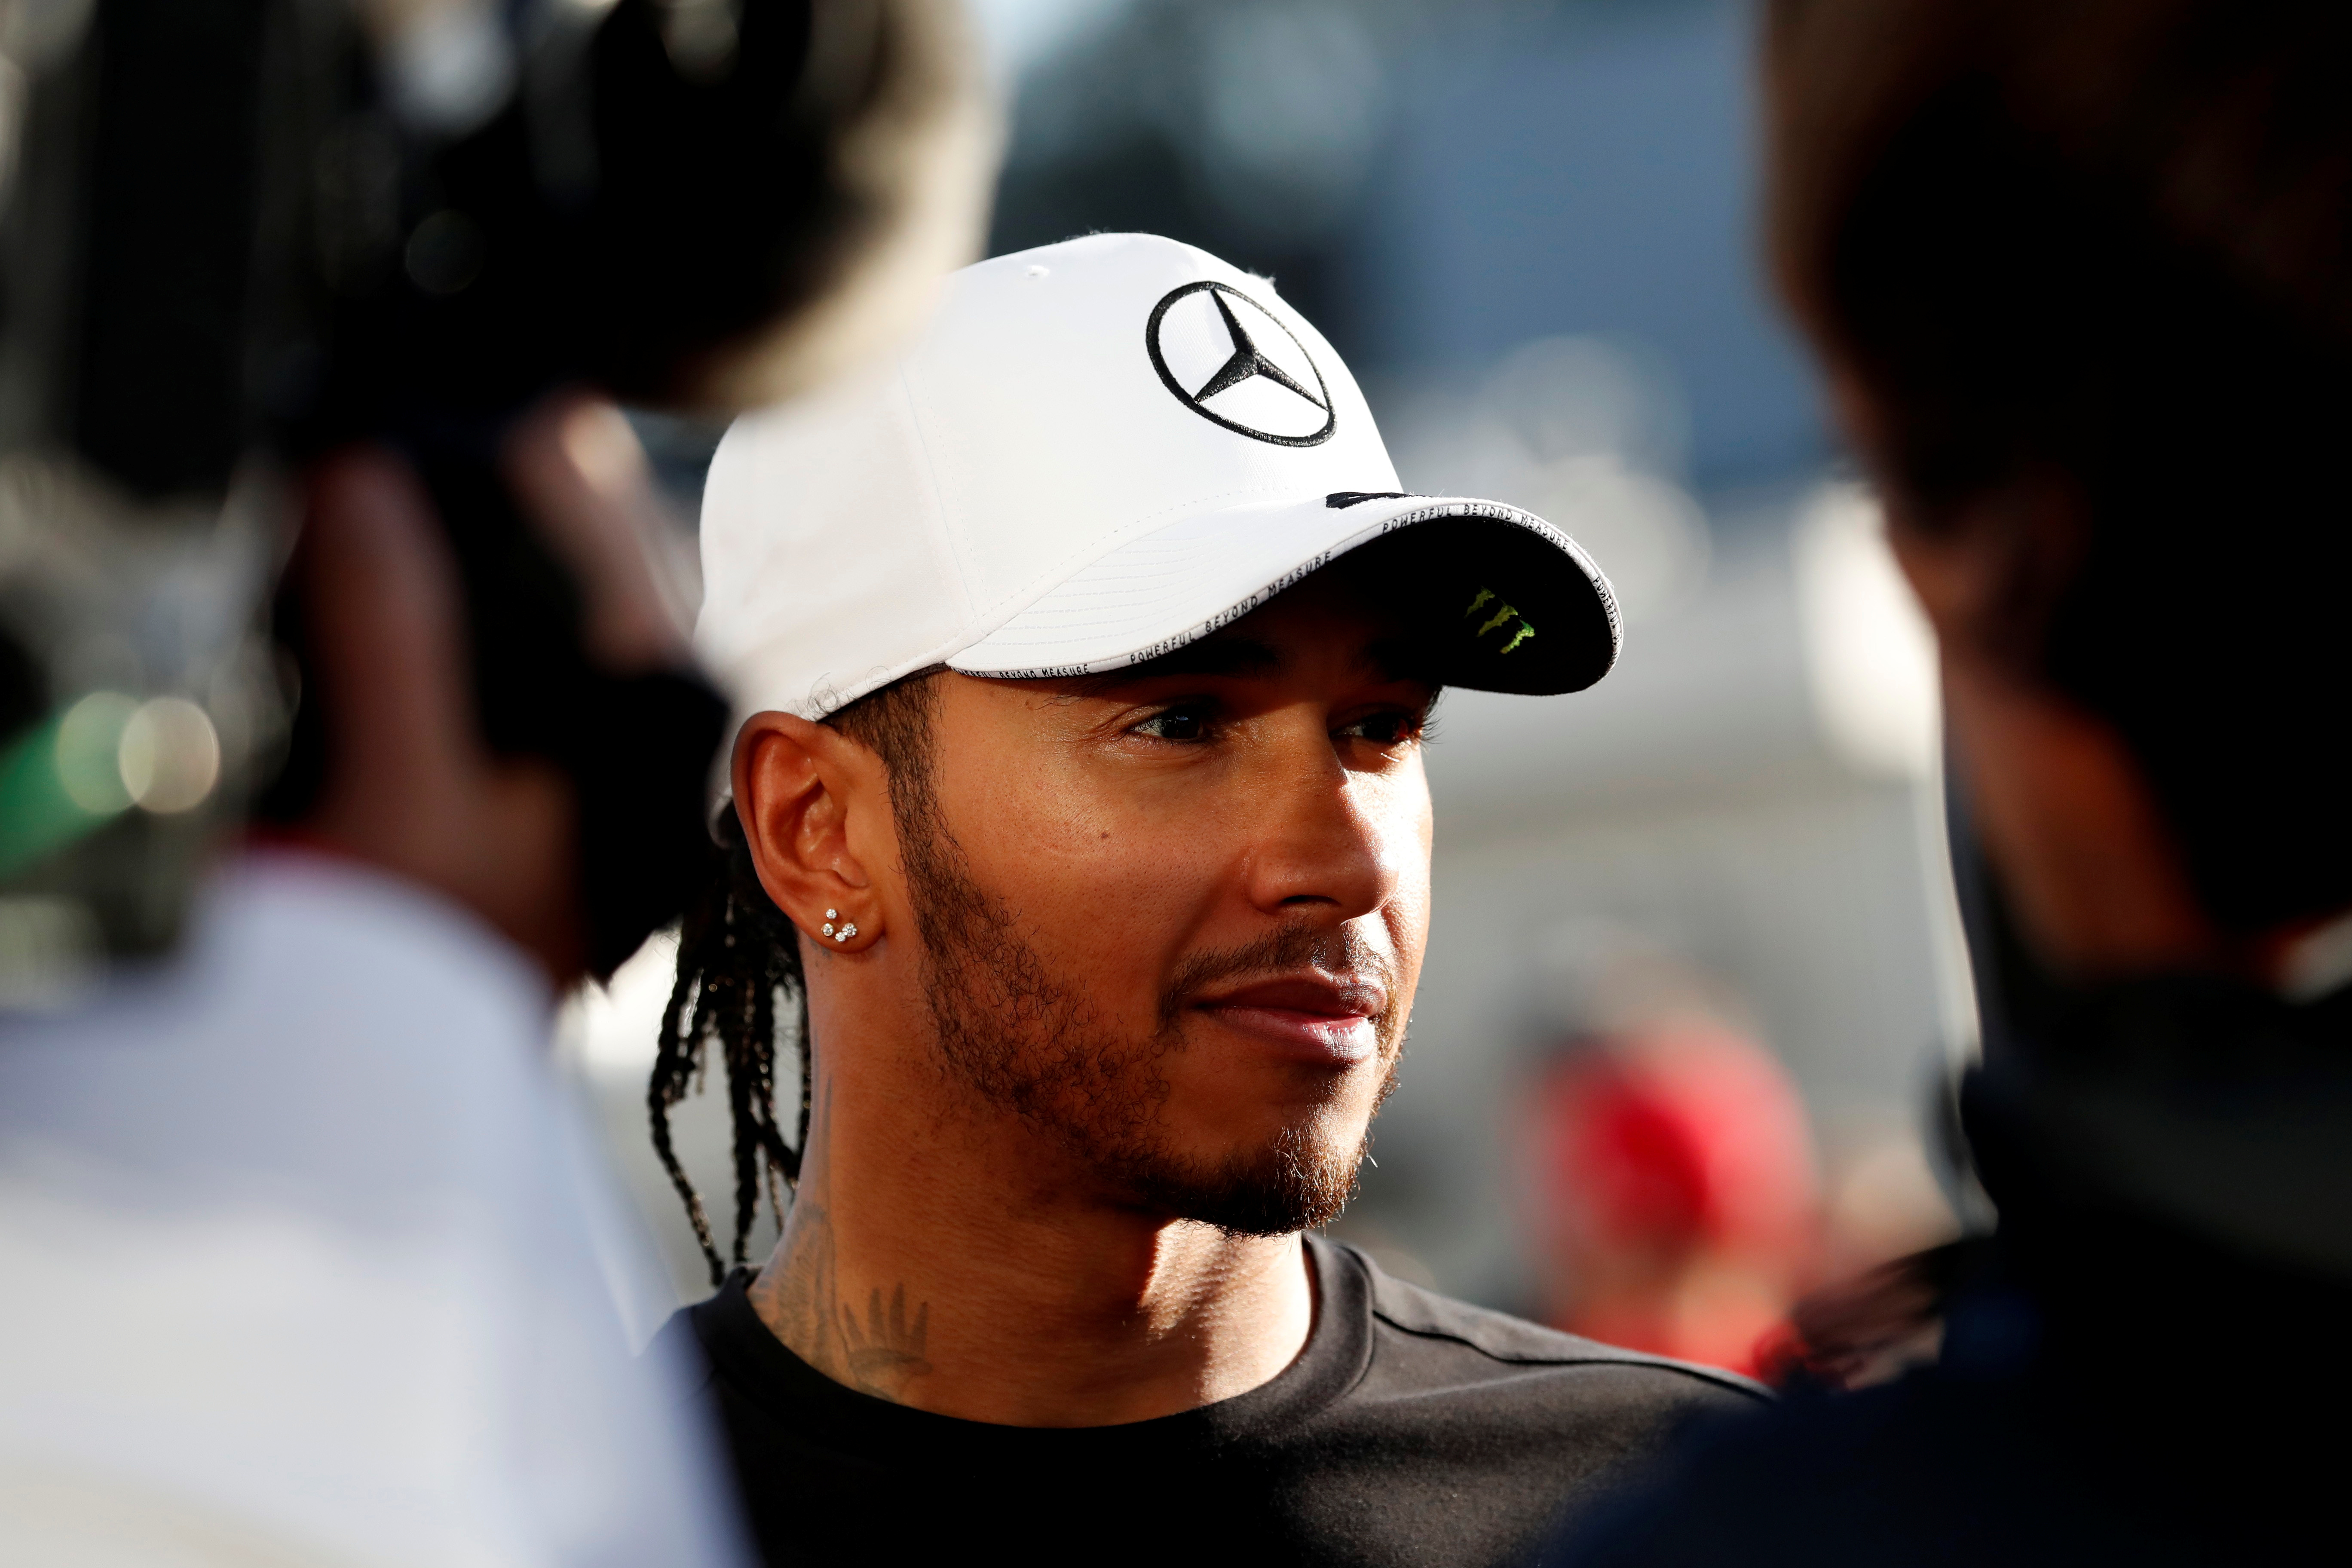 Inicio retrasado de Fórmula 1 es “casi una bendición” para Lewis Hamilton